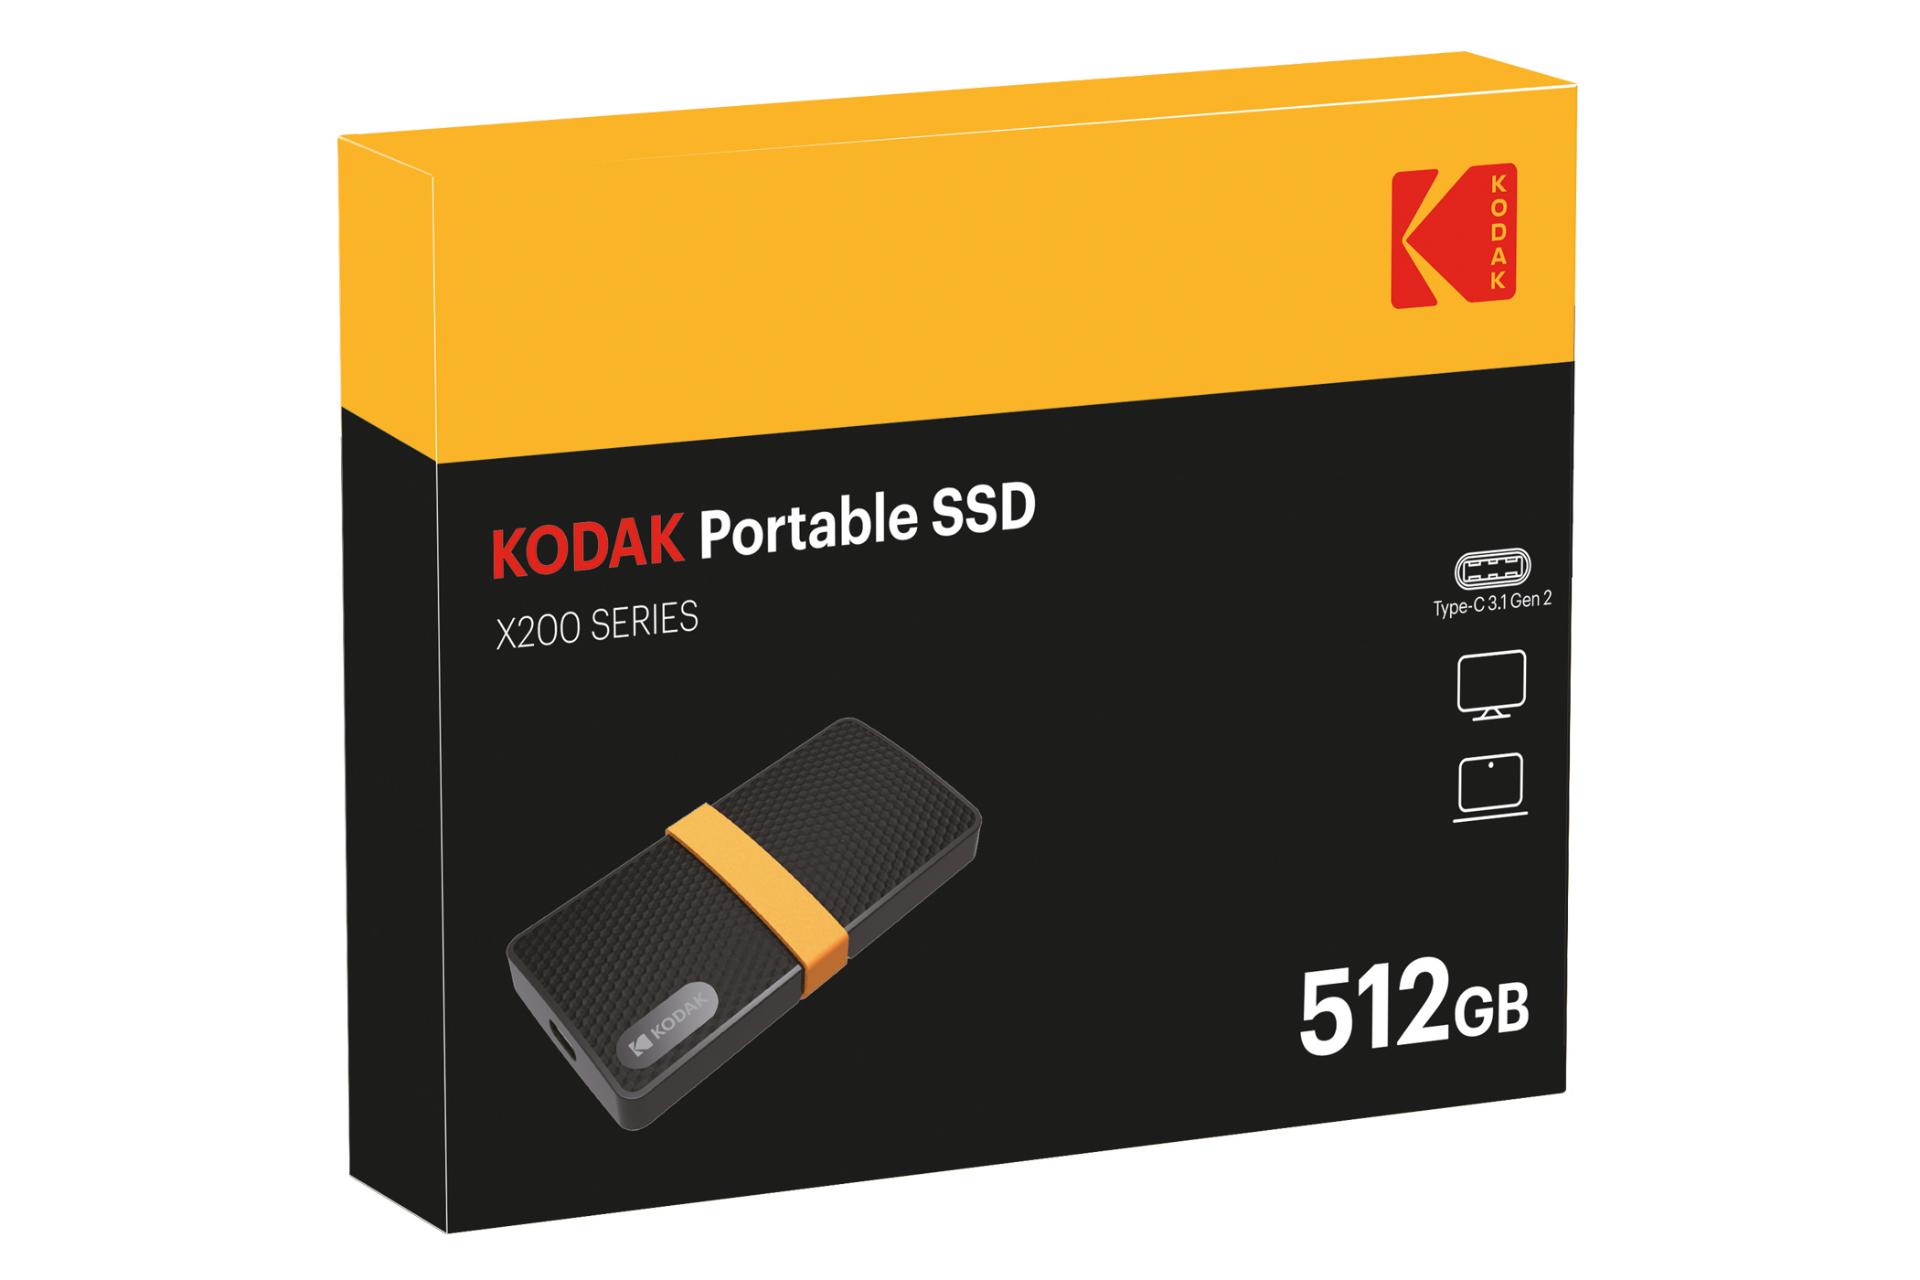 جعبه SSD کداک X200 mSATA ظرفیت 512 گیگابایت